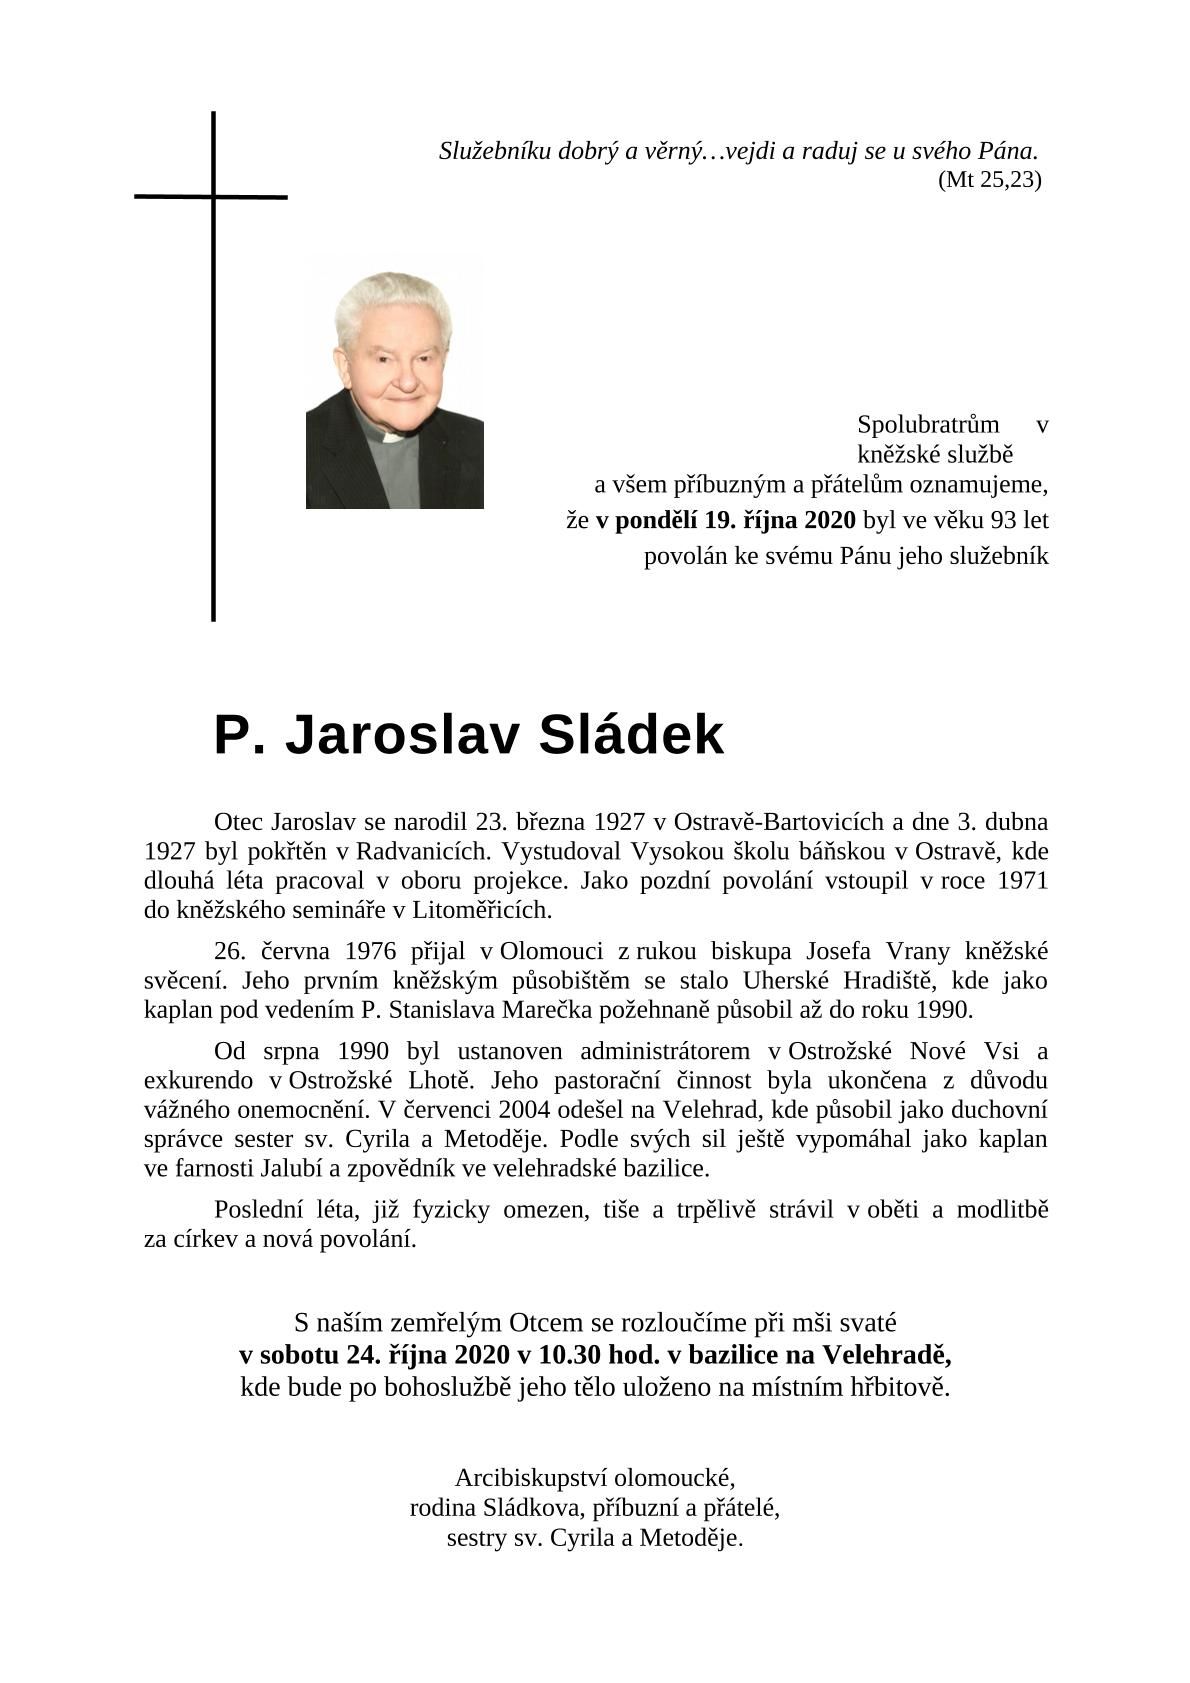 Zemřel P. Jaroslav Sládek